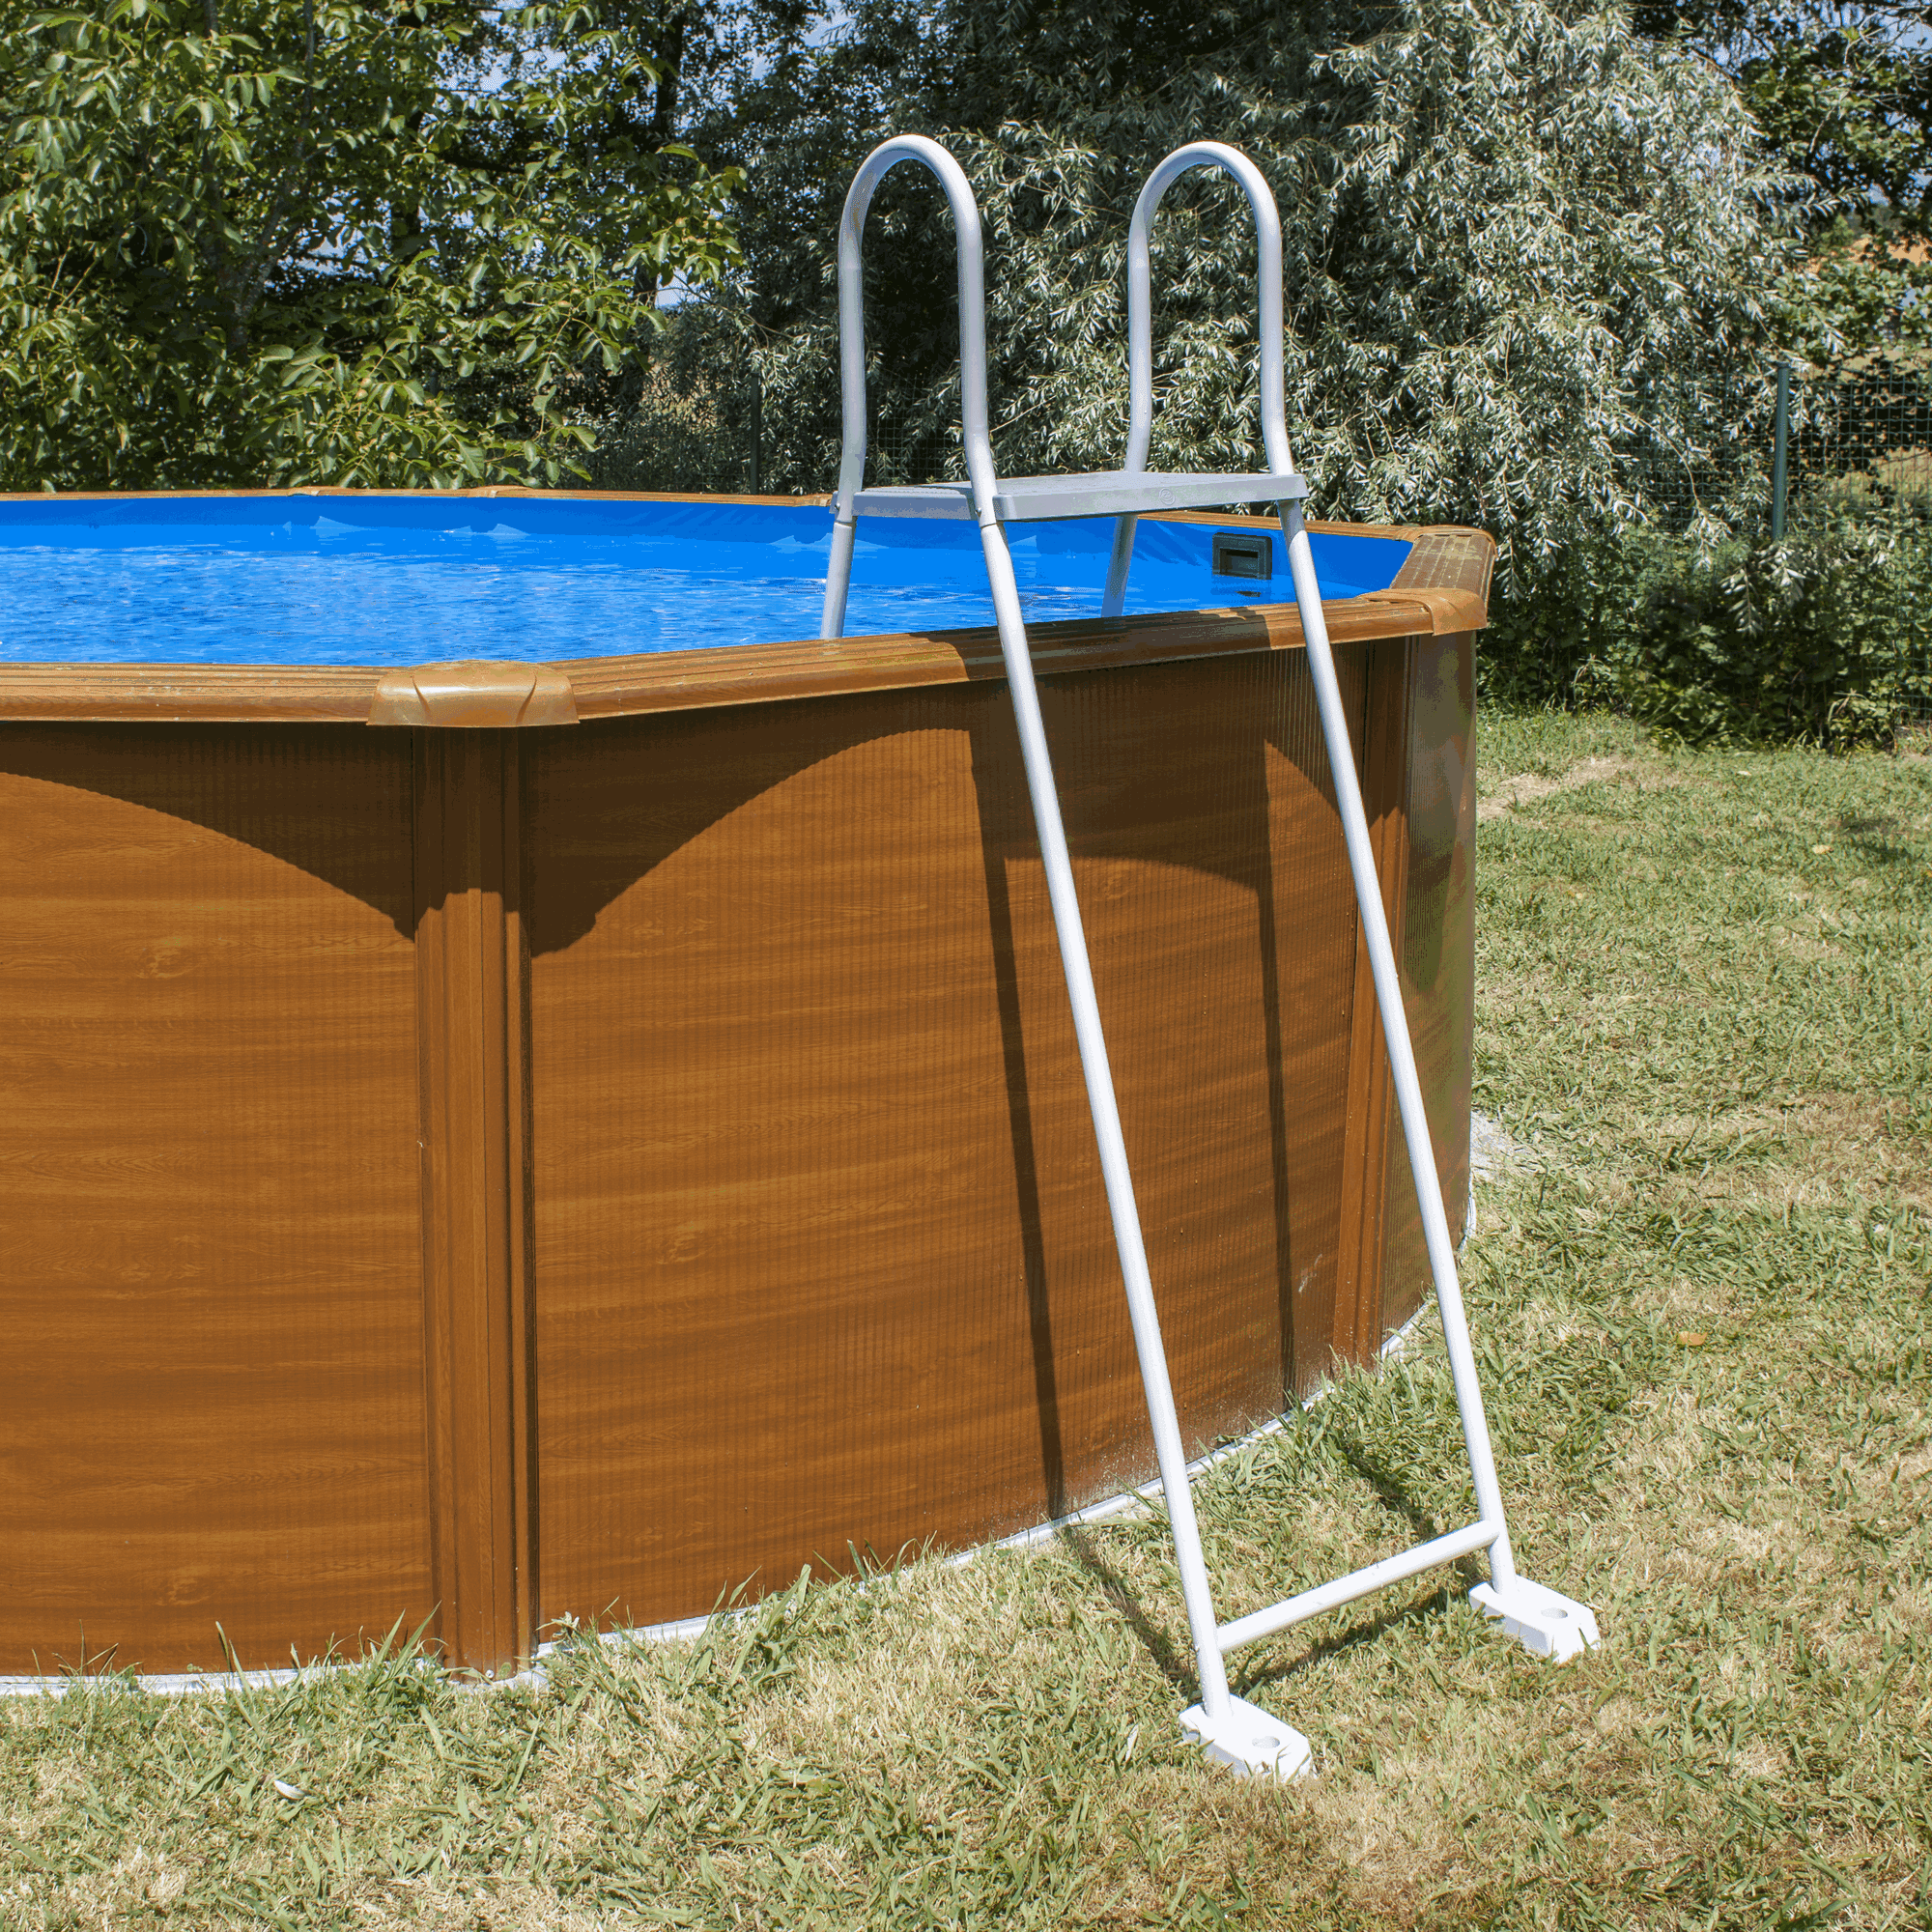 Pool-Sicherheitsleiter Stahl 2 x 3 Stufen, 134 cm + product picture